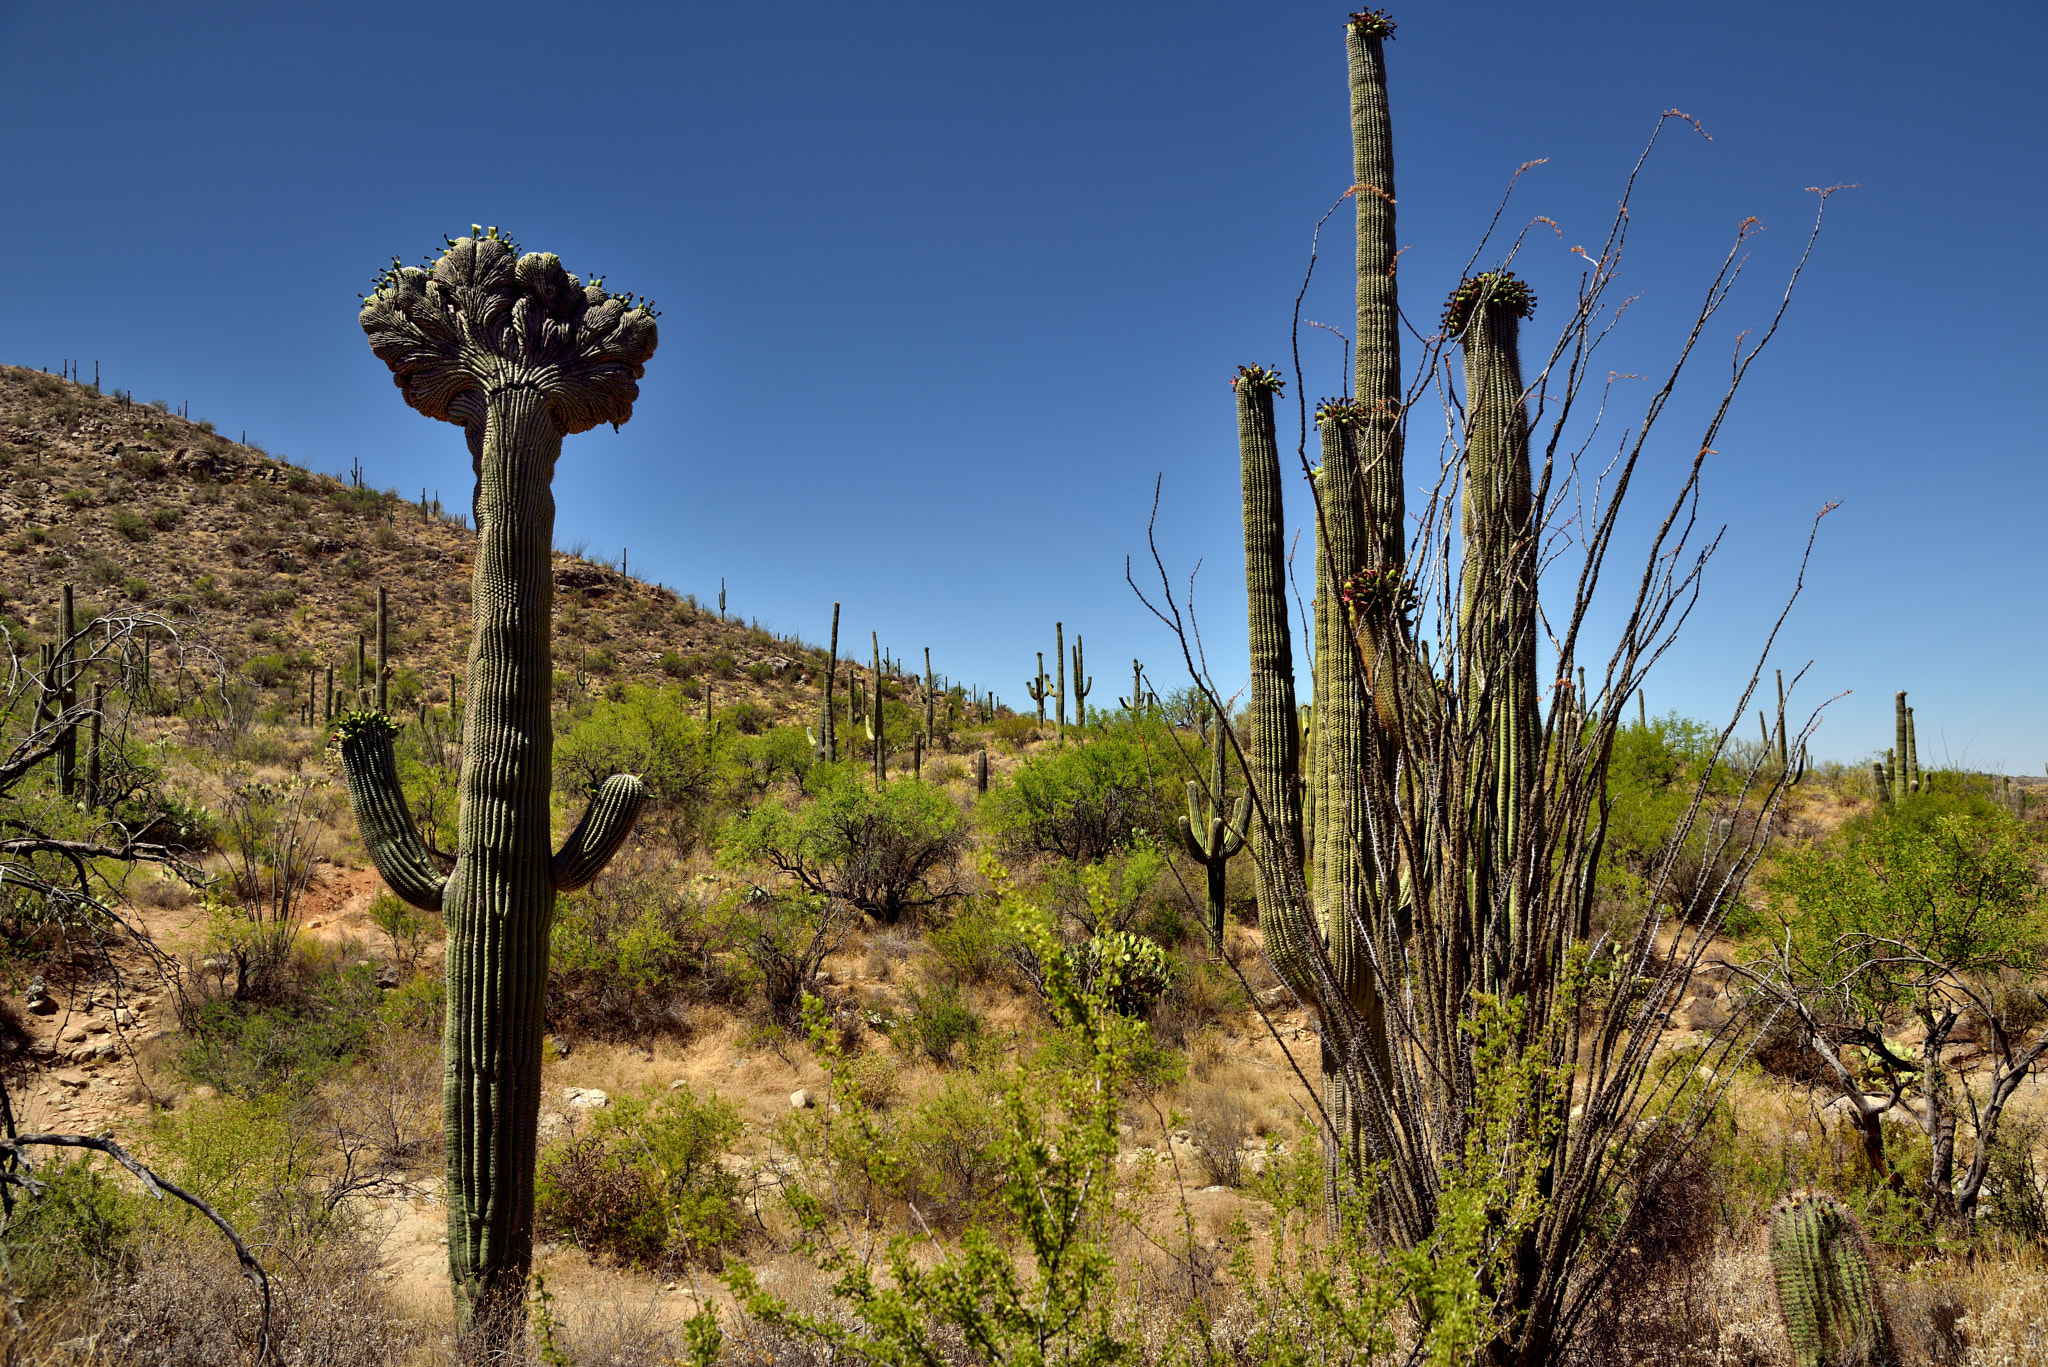 Nikon D800E + Nikon AF-S Nikkor 24-120mm F4G ED VR sample photo. Crested saguaro along with a hillside of many other saguaro cactus photography